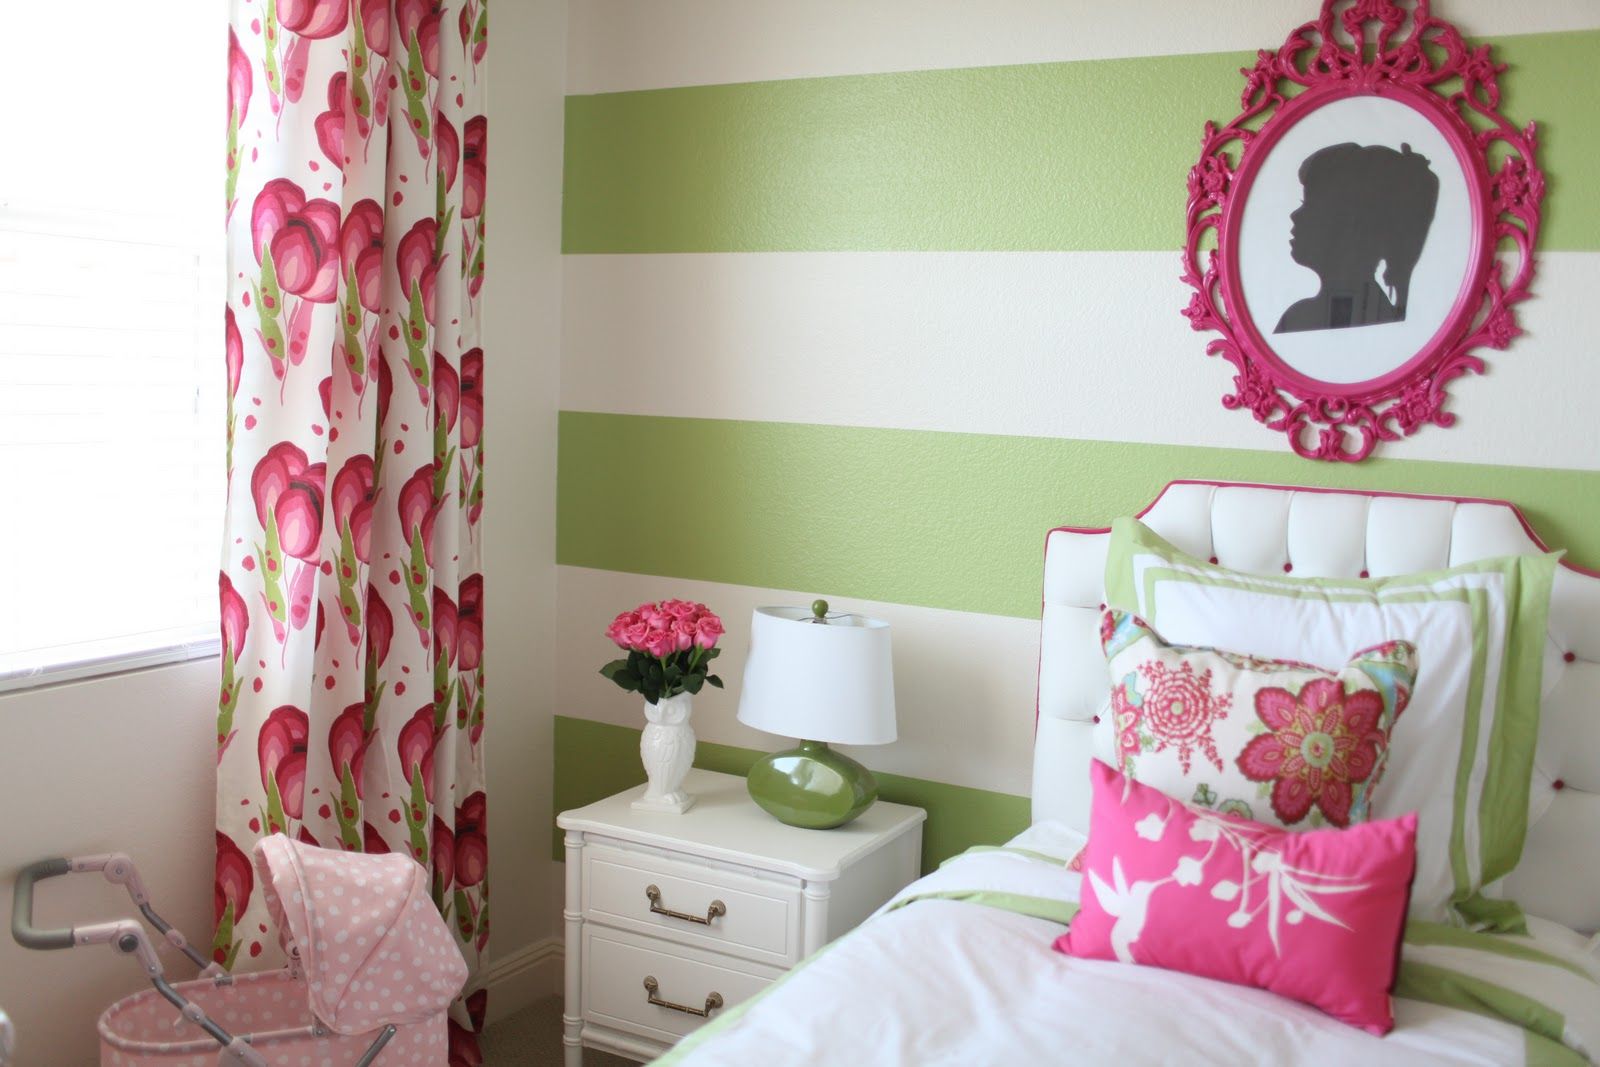 Фото 10 - Обои с широкими зелеными полосами в комнате для девочки 